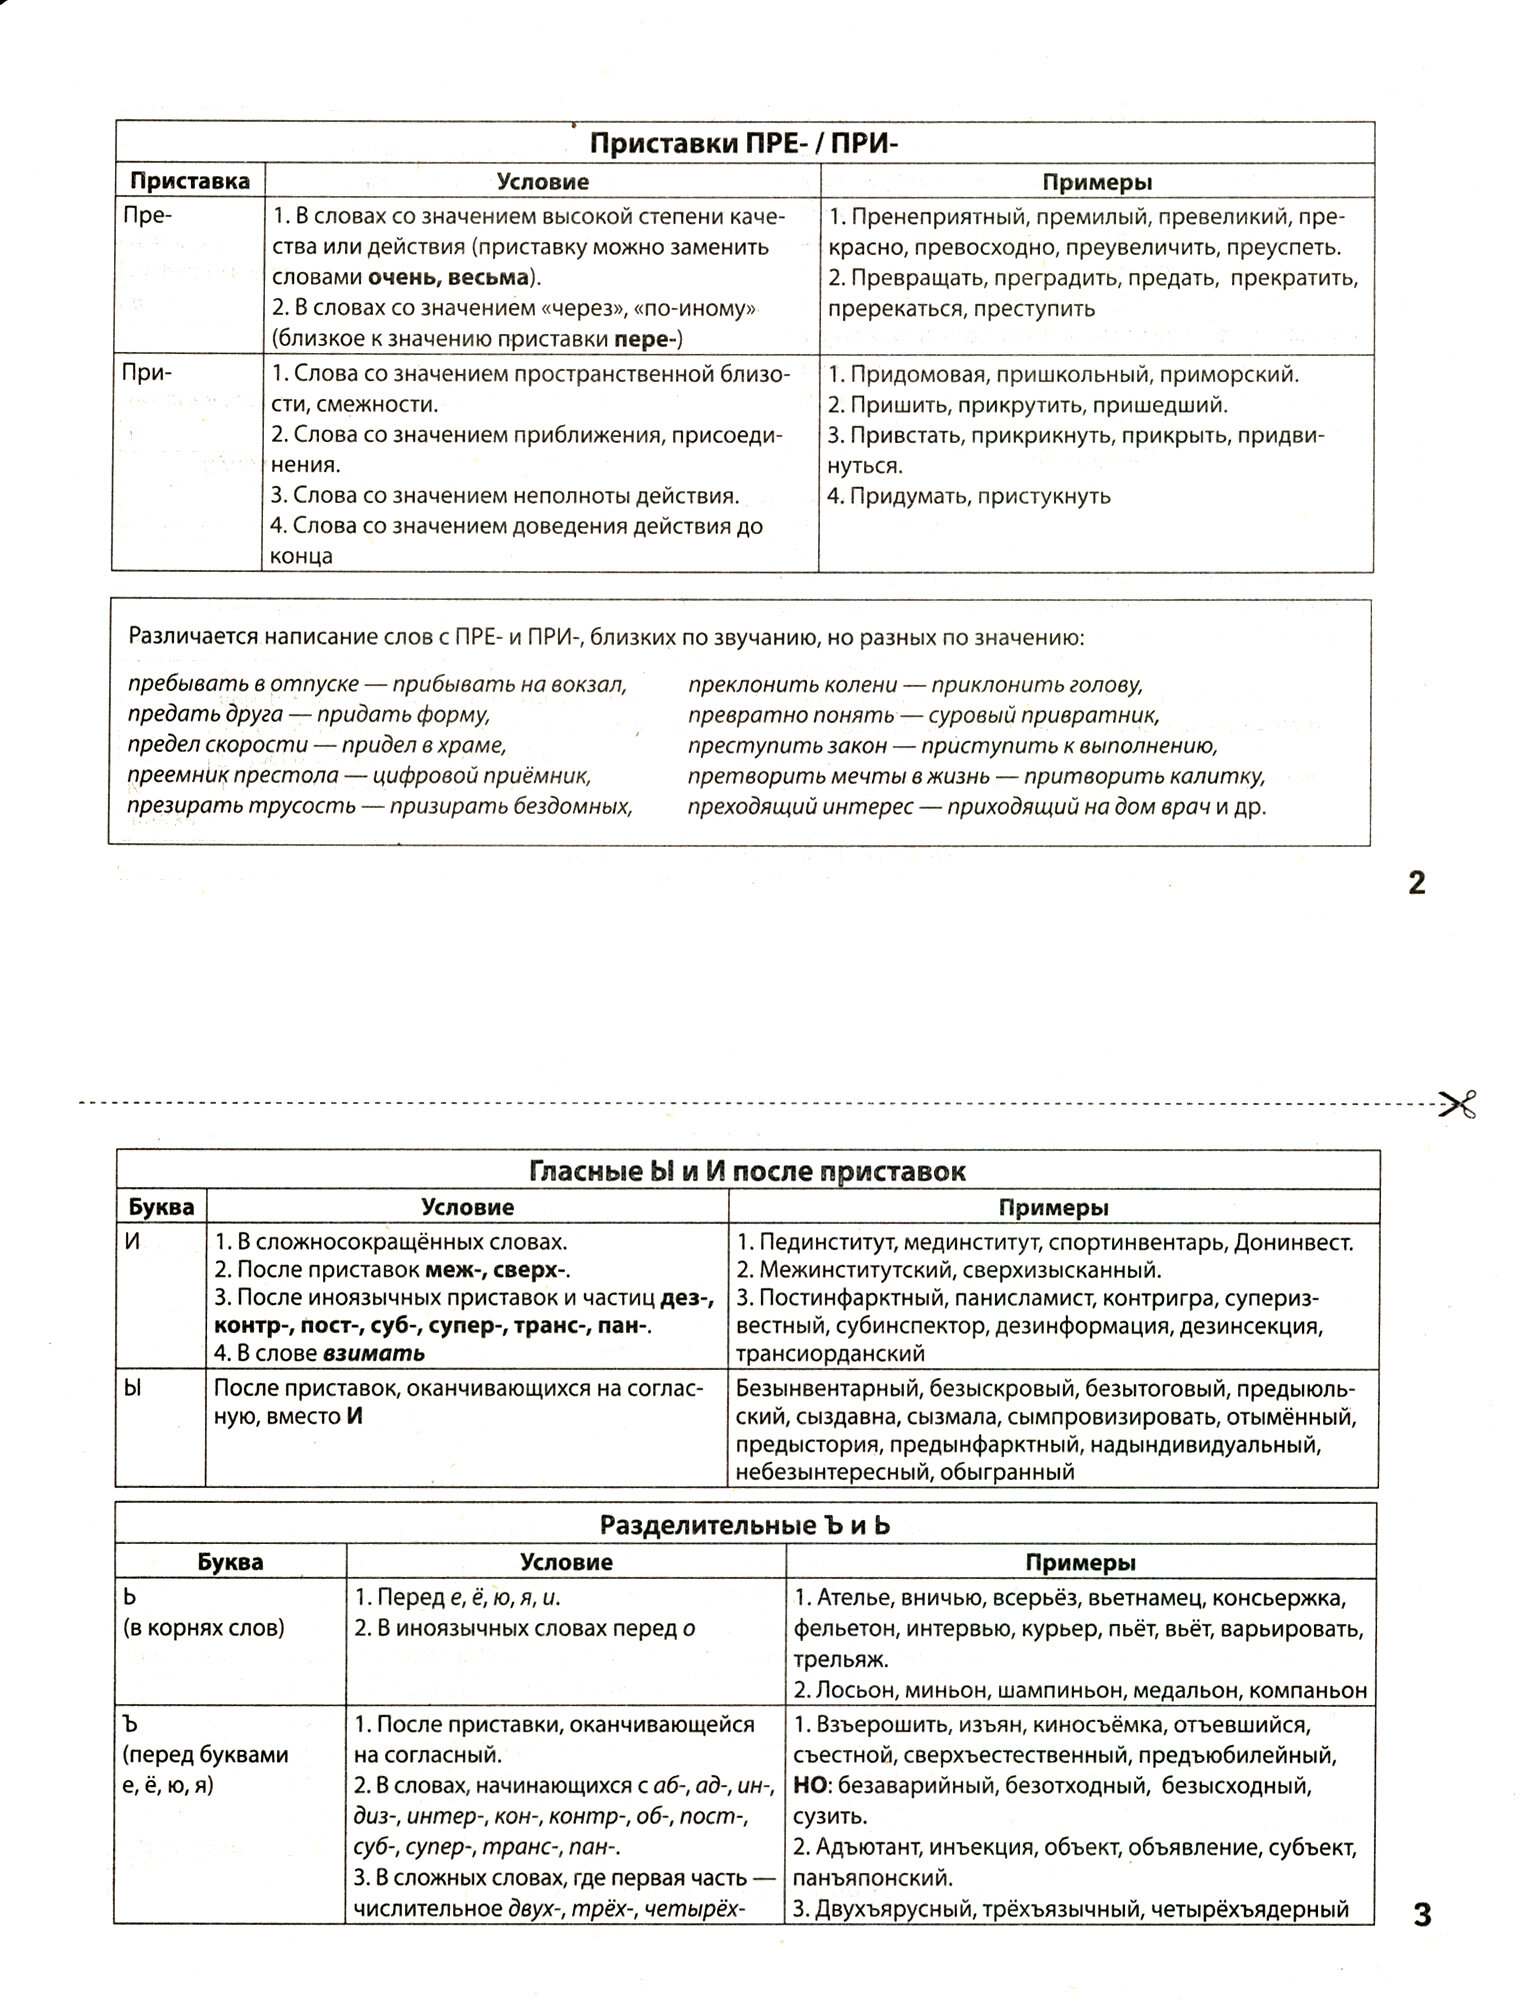 Русский язык в карточках: мнемосхемы для школьников - фото №5